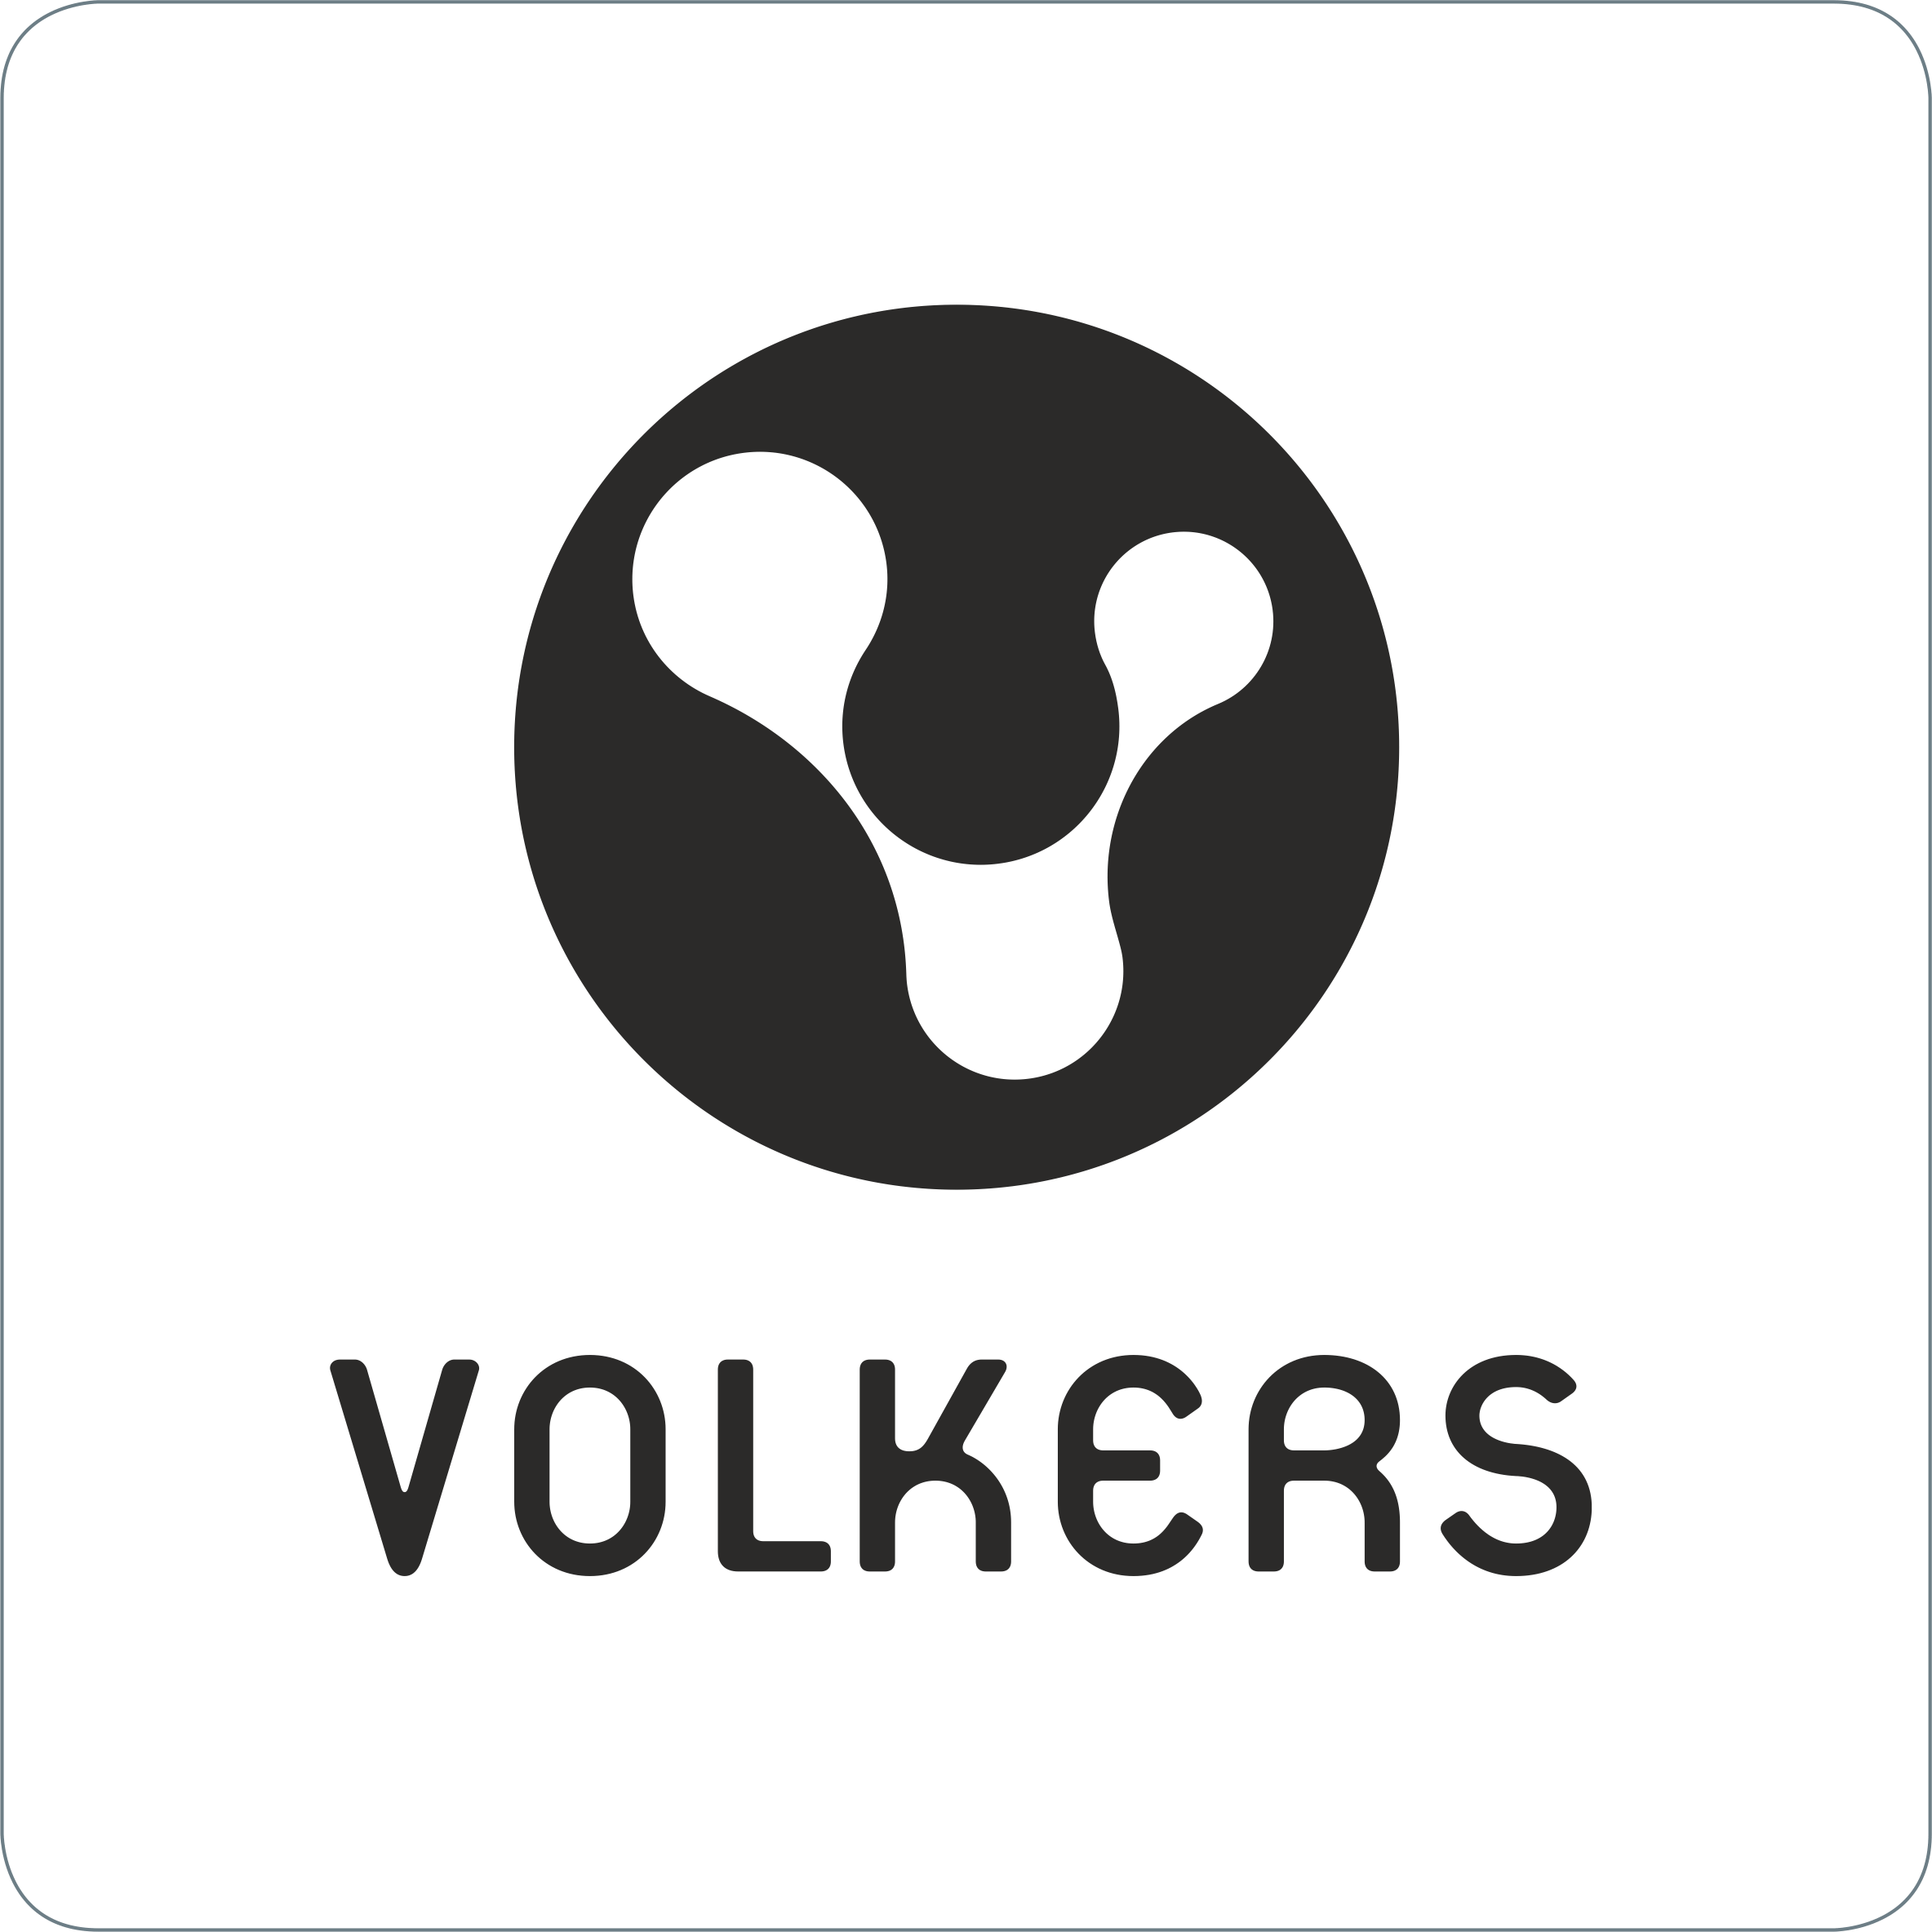 Volkers